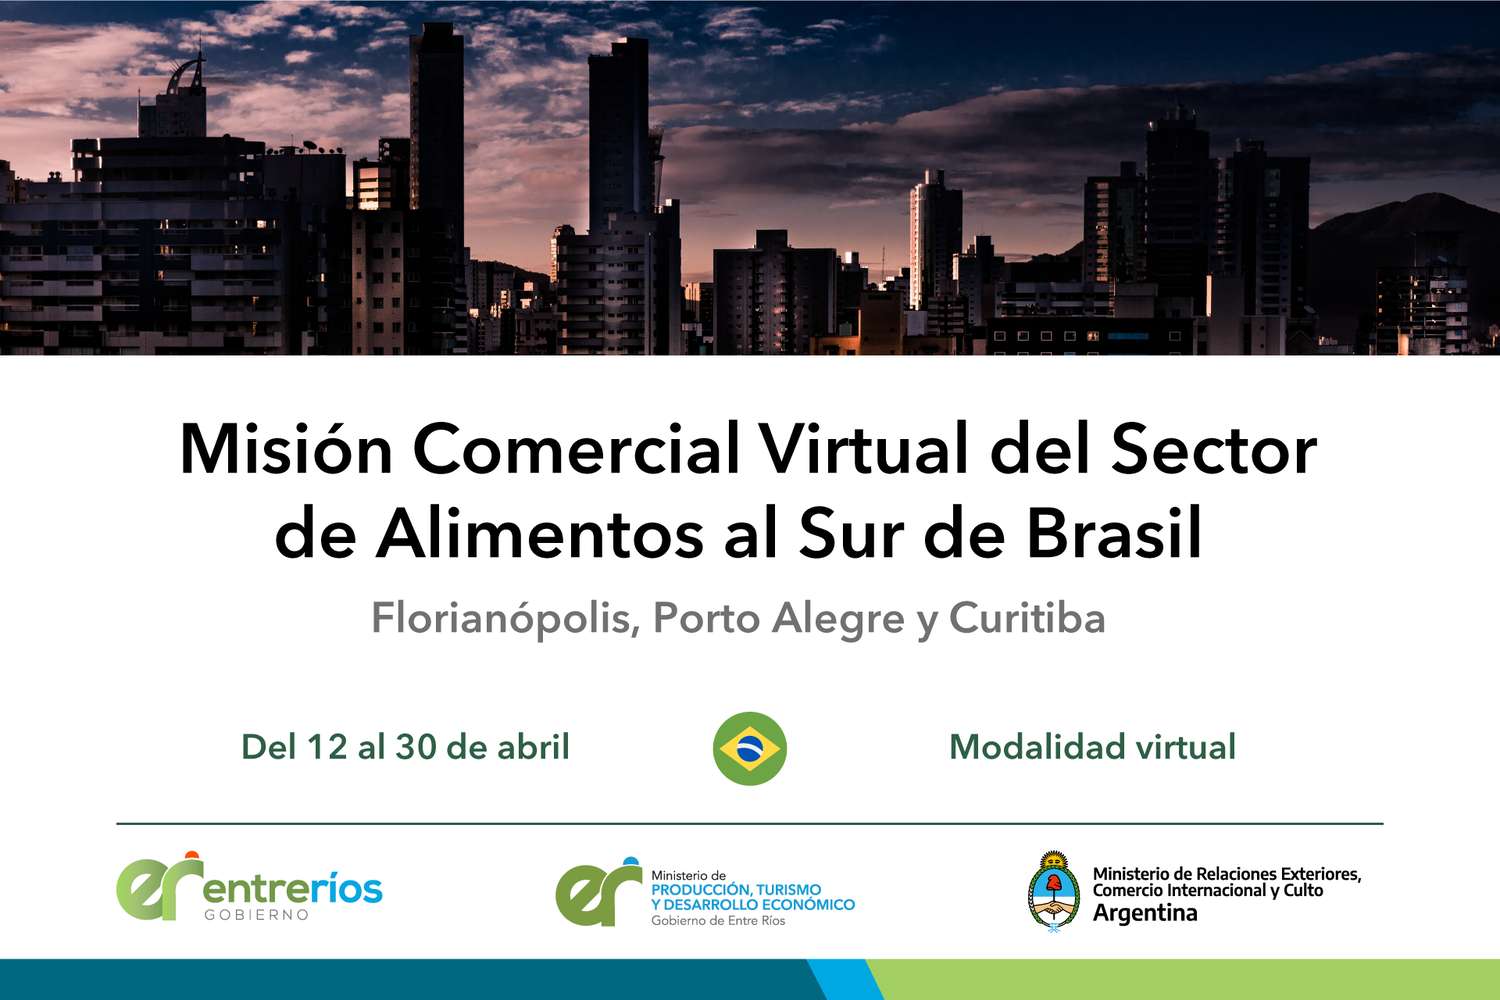 Empresas entrerrianas participan en una misión virtual en Brasil